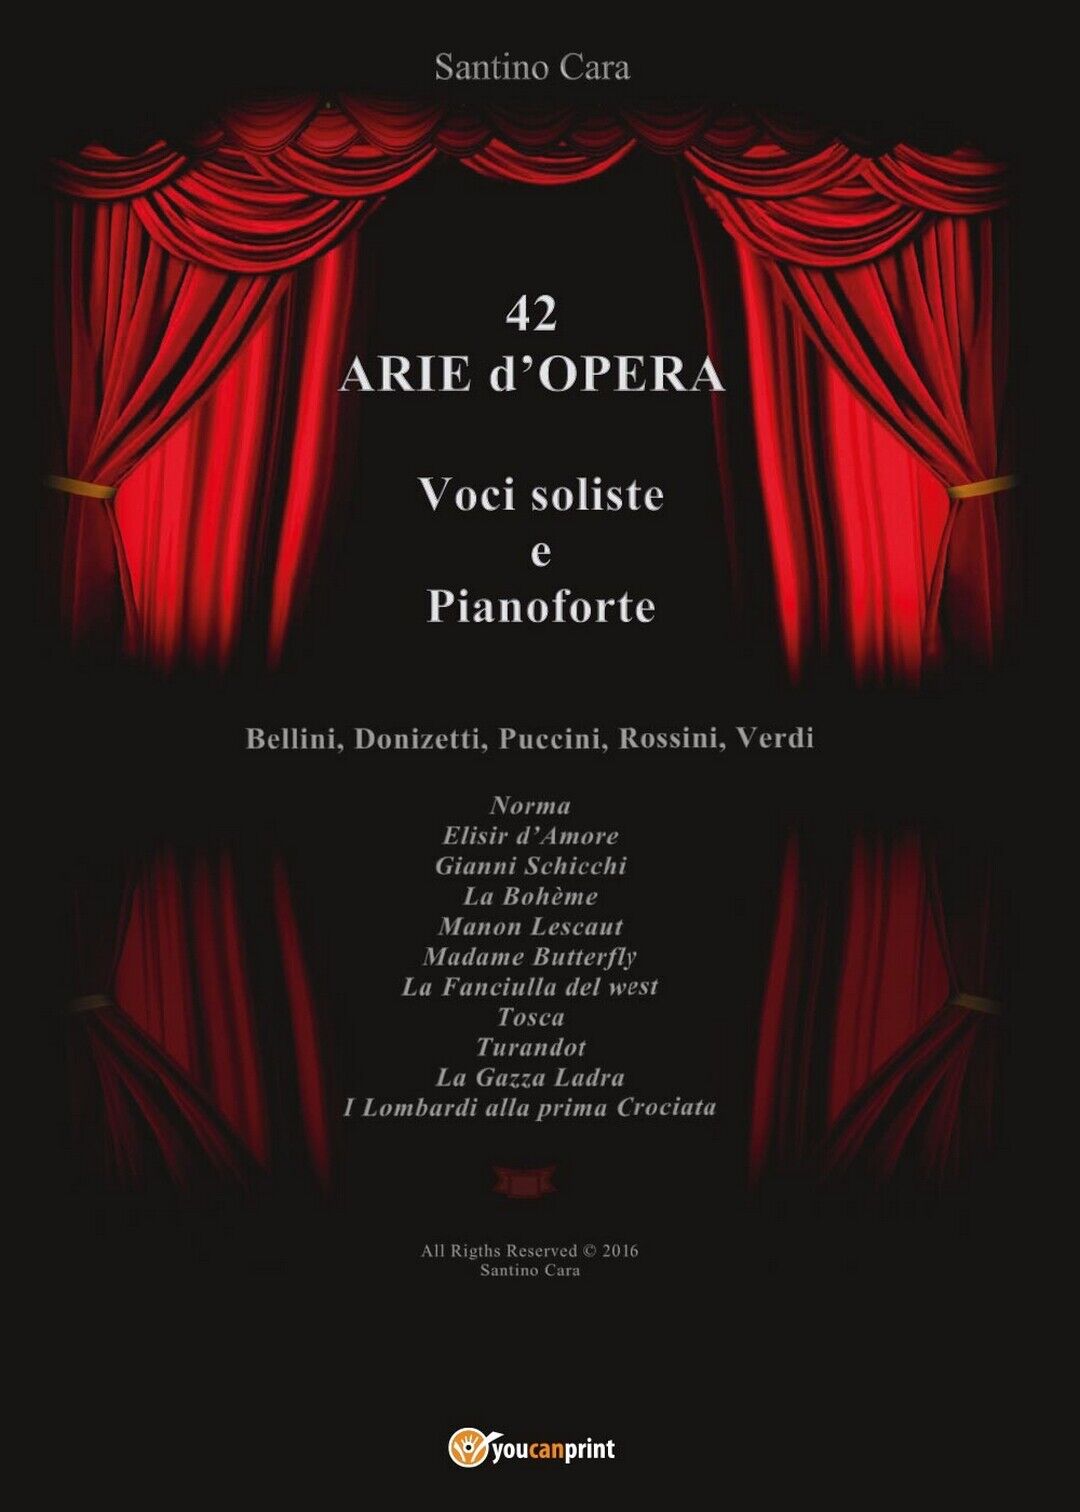 42 Arie d'Opera per Voci Soliste e Pianoforte, Santino Cara,  2016,  Youcanprint